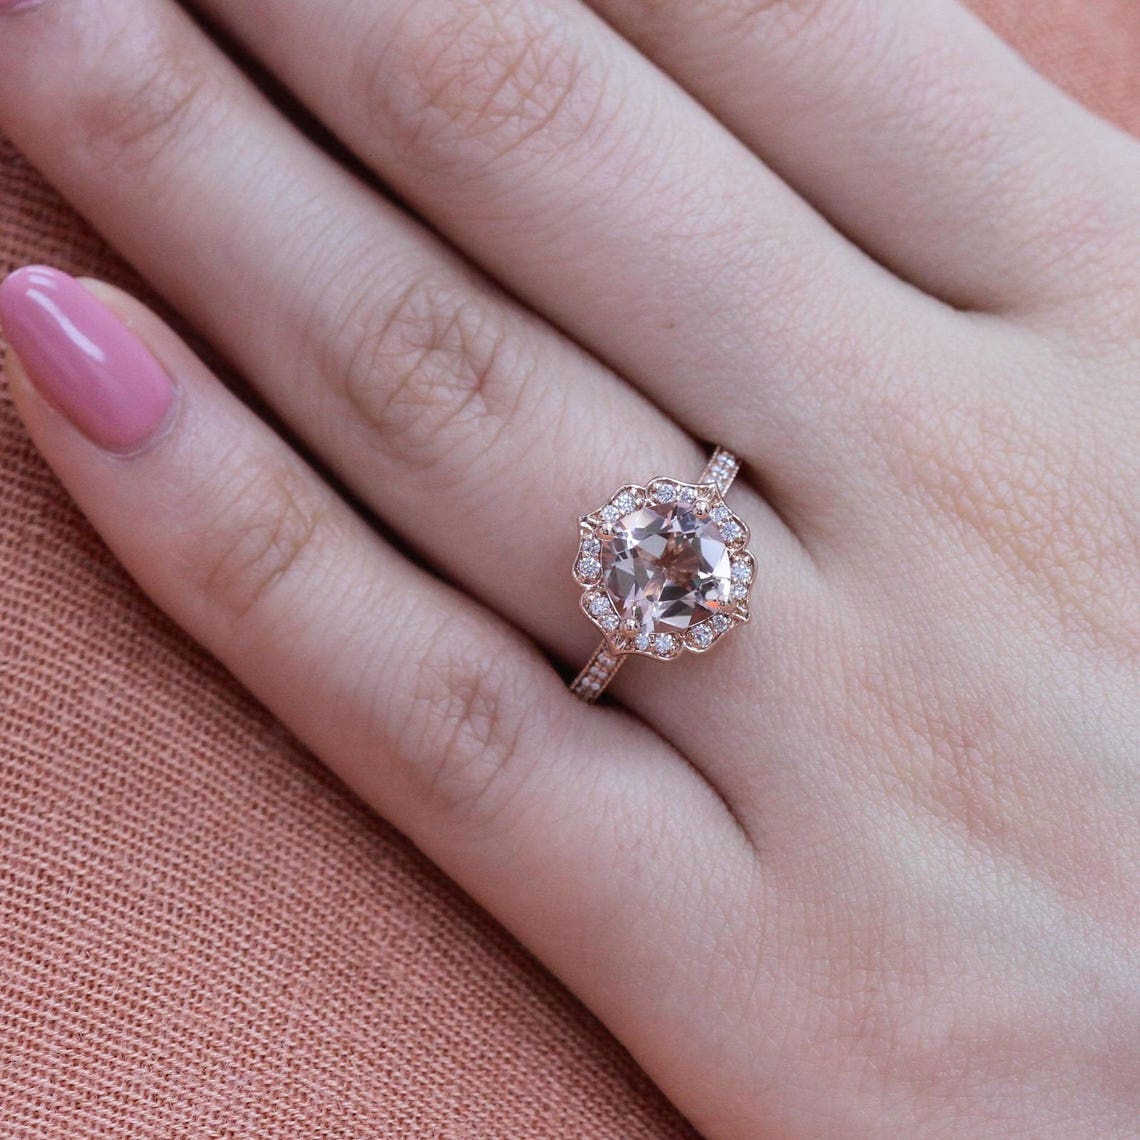 Vintage Floral Morganite Engagement Ring in 14k Rose Gold | Etsy